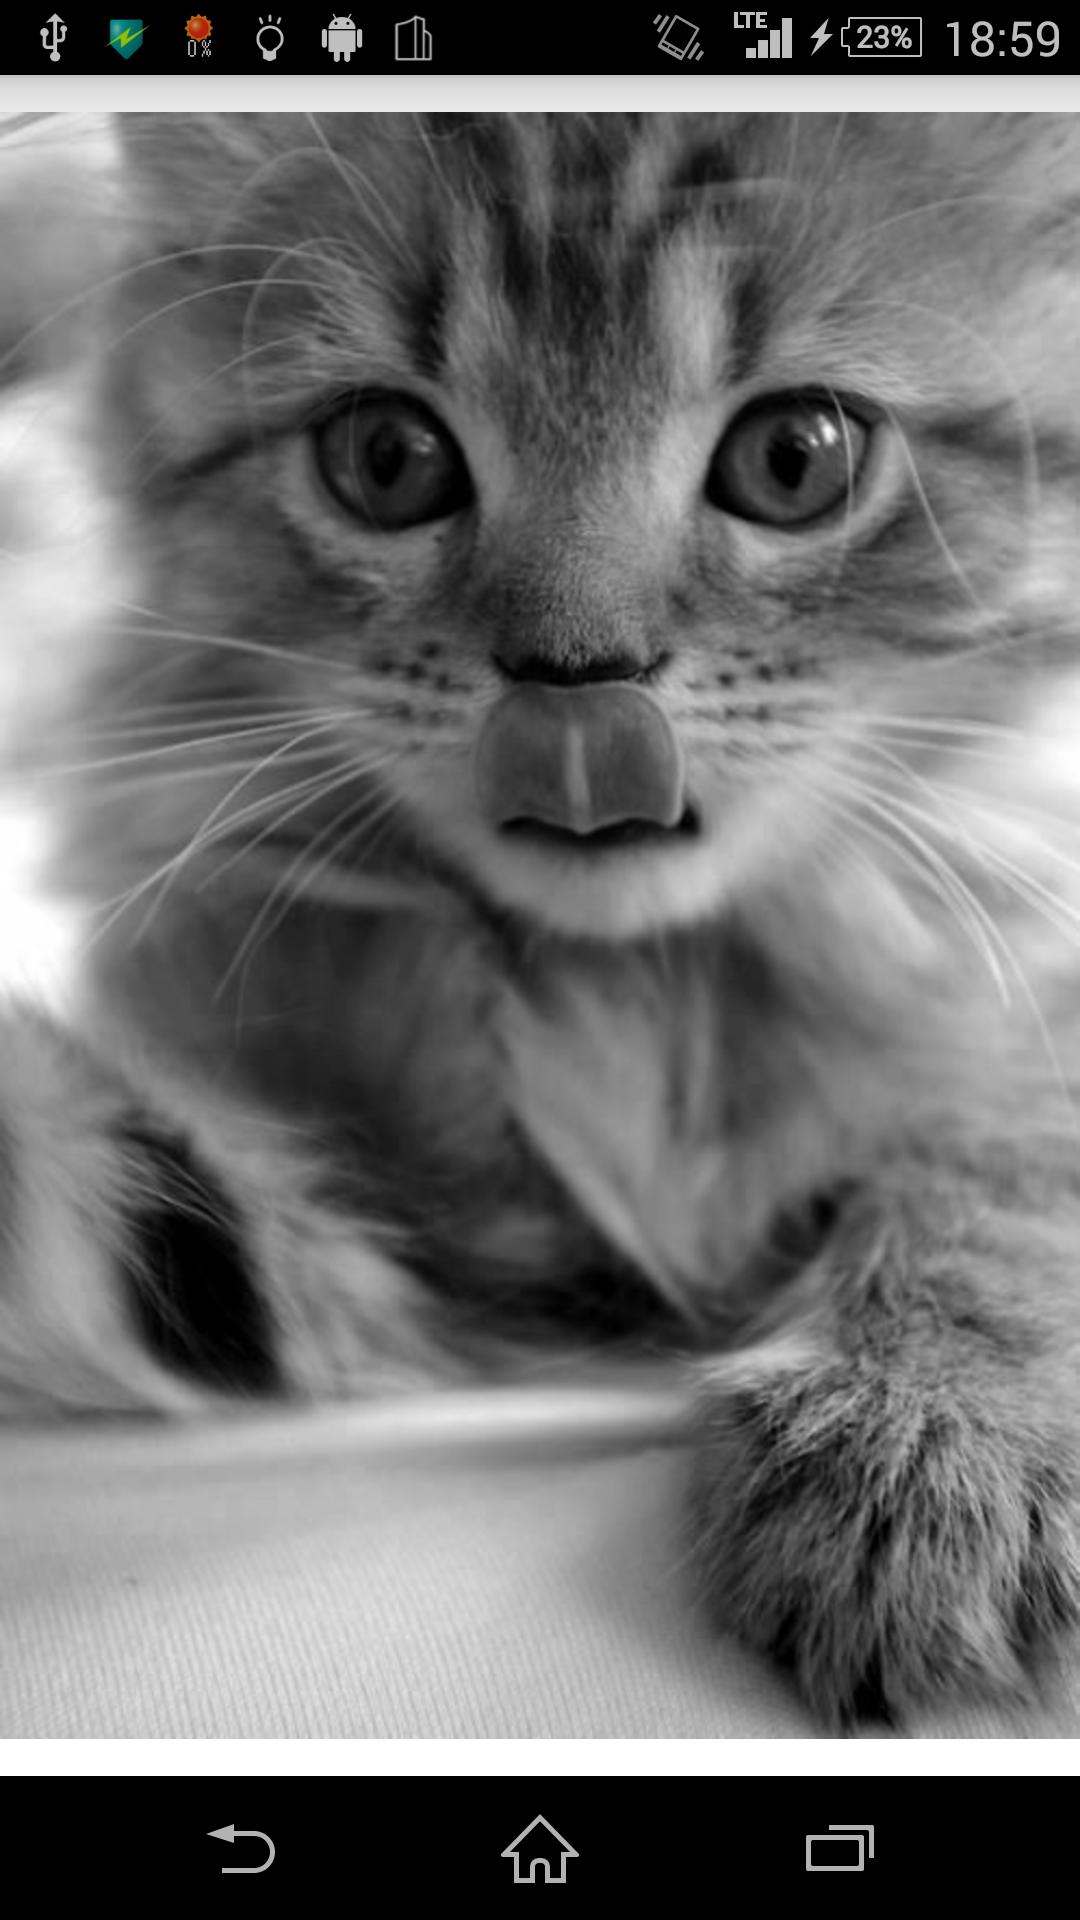 可愛いおもしろい猫写真集 For Android Apk Download